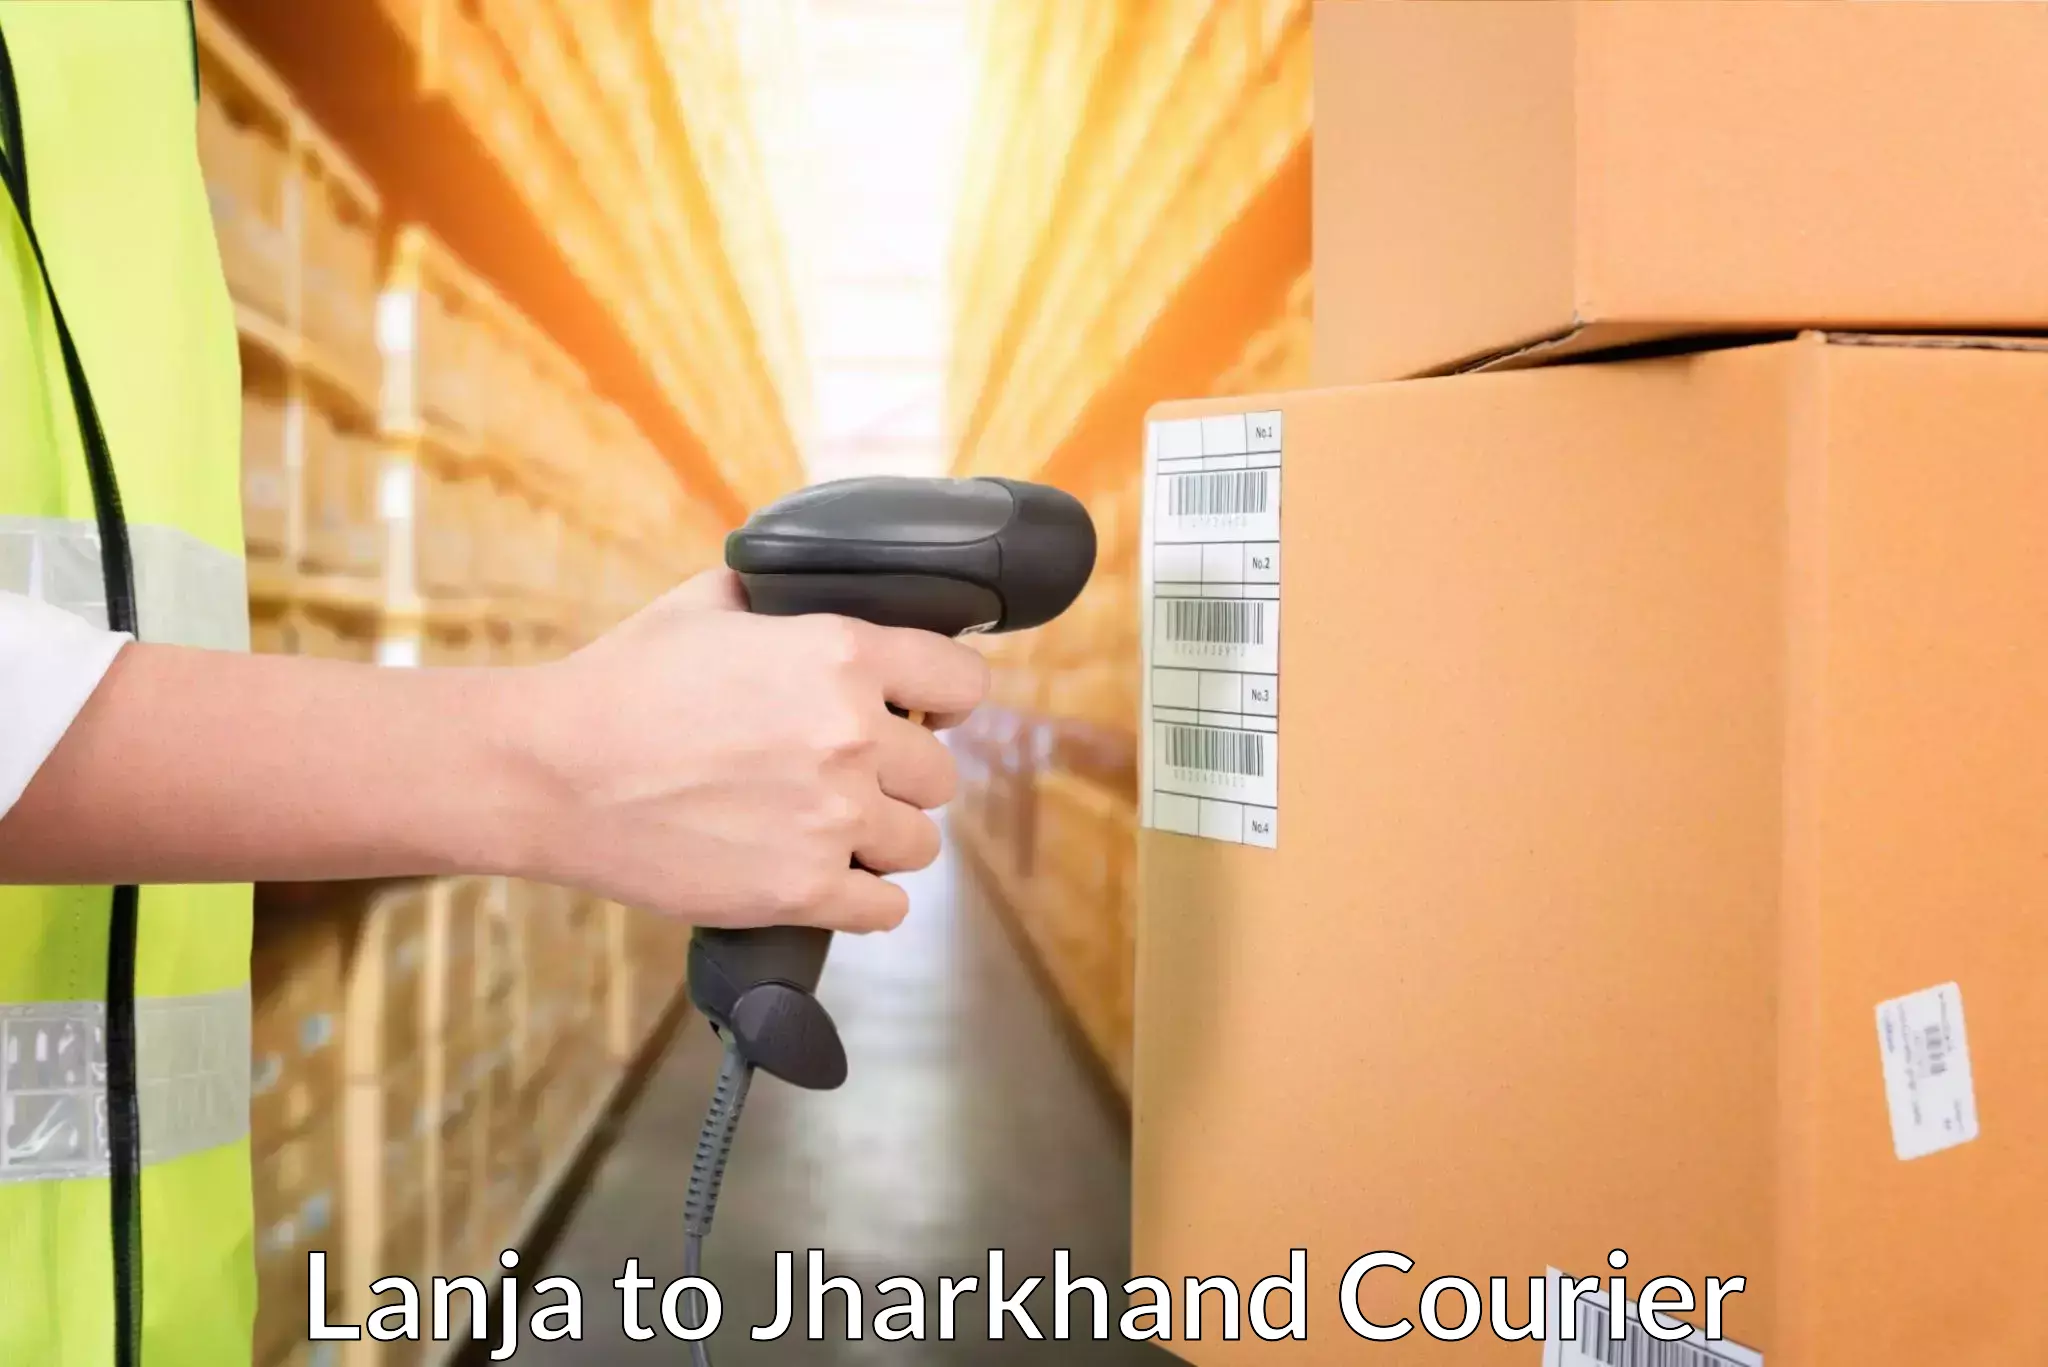 Customer-focused courier Lanja to Rajdhanwar